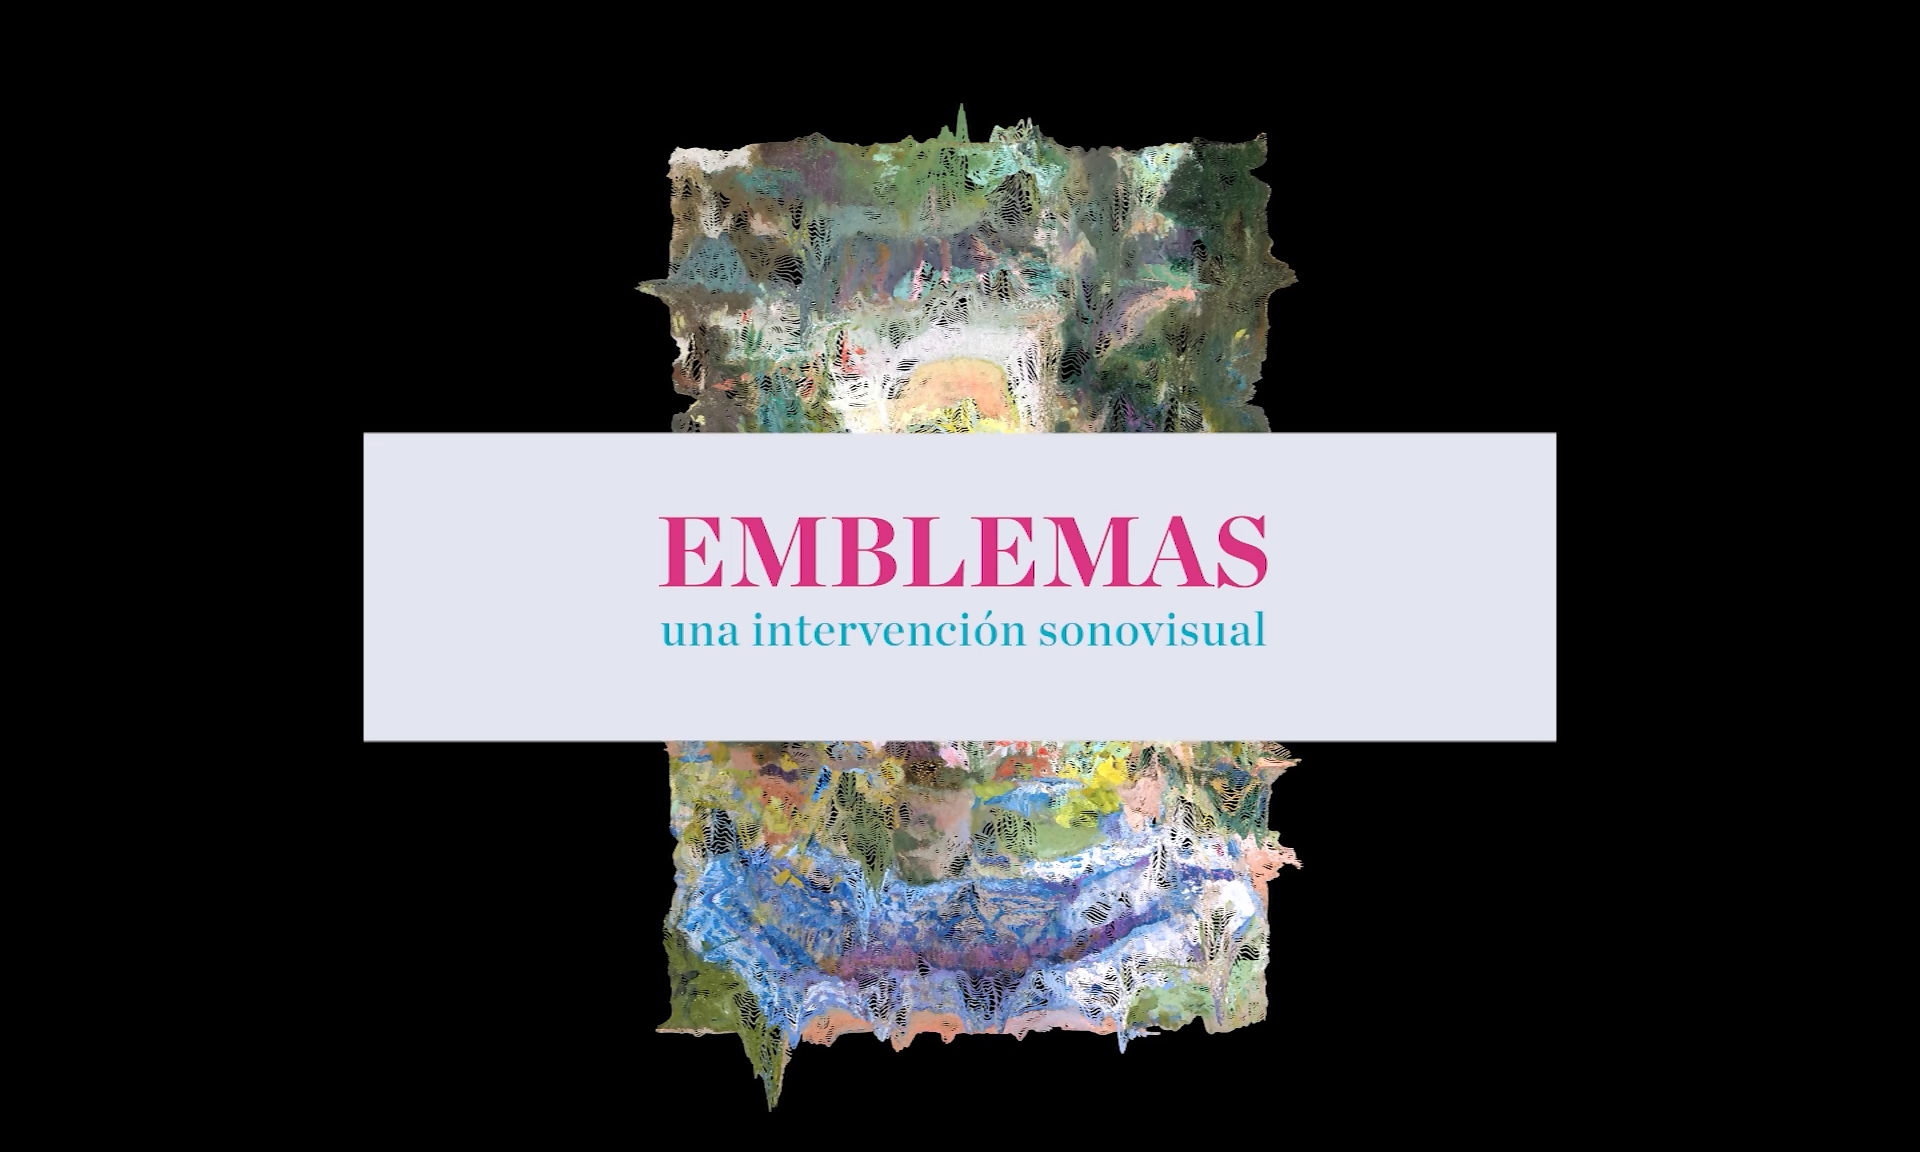 El Museo Carmen Thyssen Málaga presenta el proyecto "Emblemas"